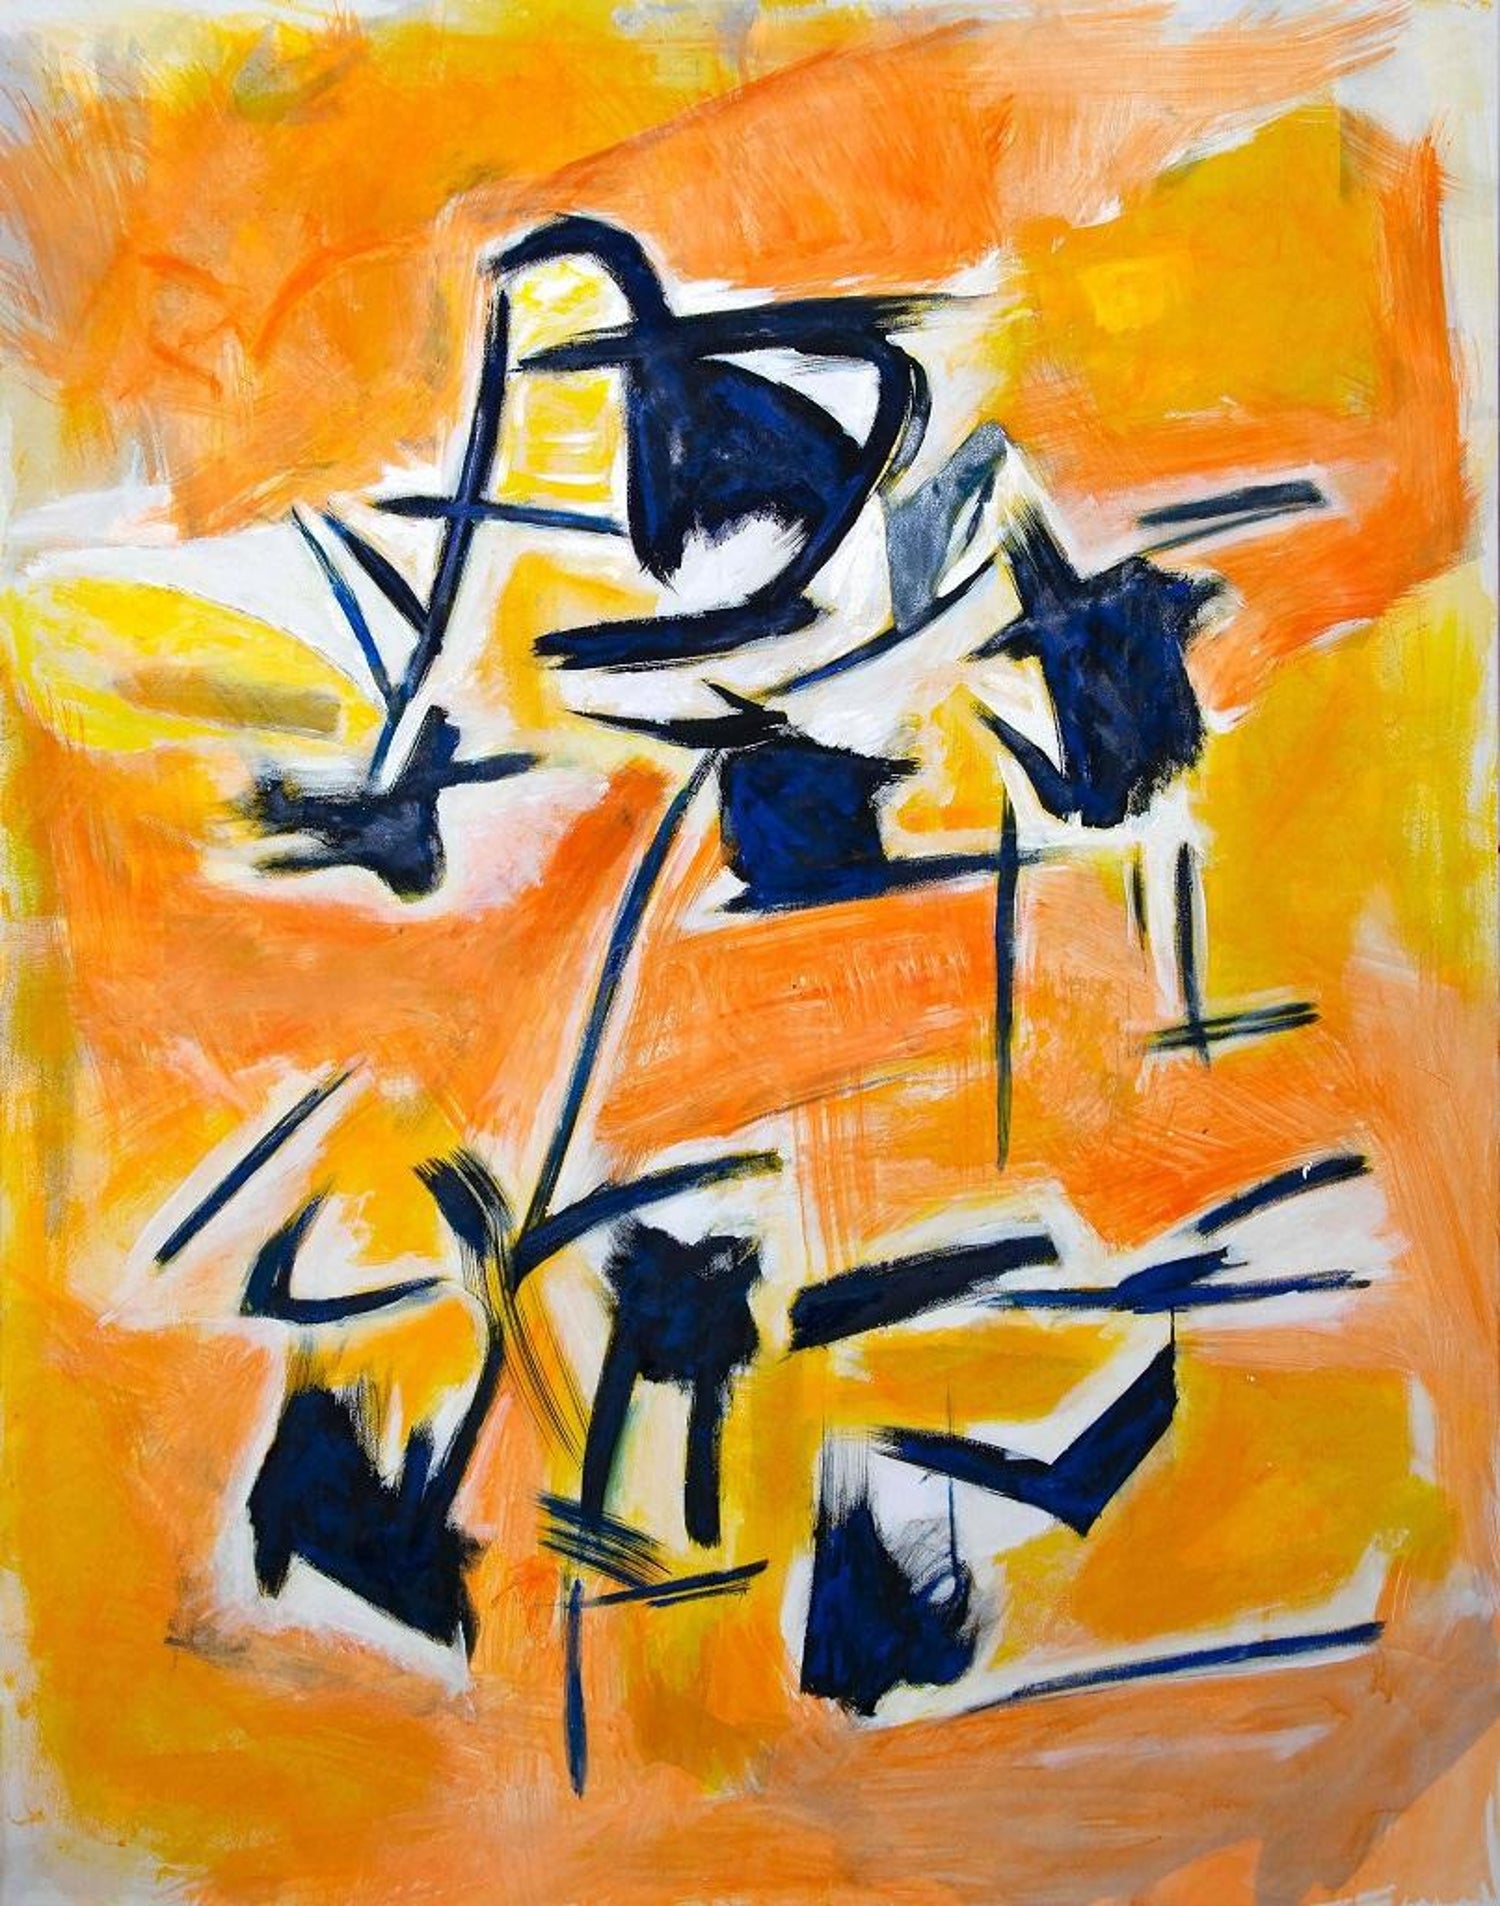 Giorgio Lo Fermo - The Orange Inspiration - Original Oil on Canvas by G. Lo  Fermo - 2020 For Sale at 1stDibs